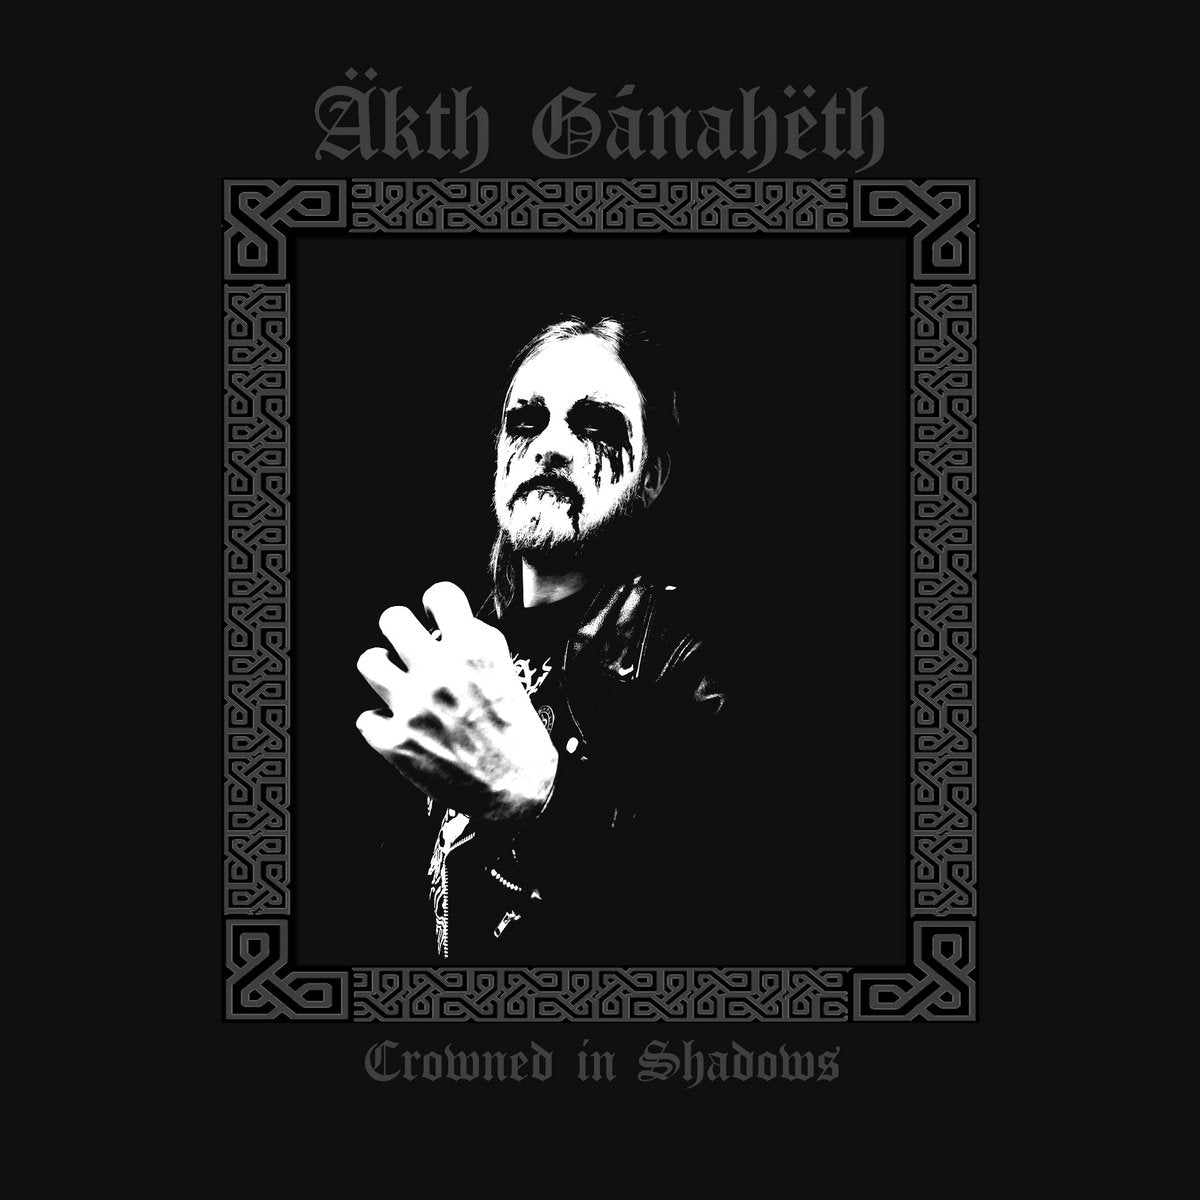 [SOLD OUT] ÄKTH GÁNAHËTH “Crowned in Shadows” CD (digipak)